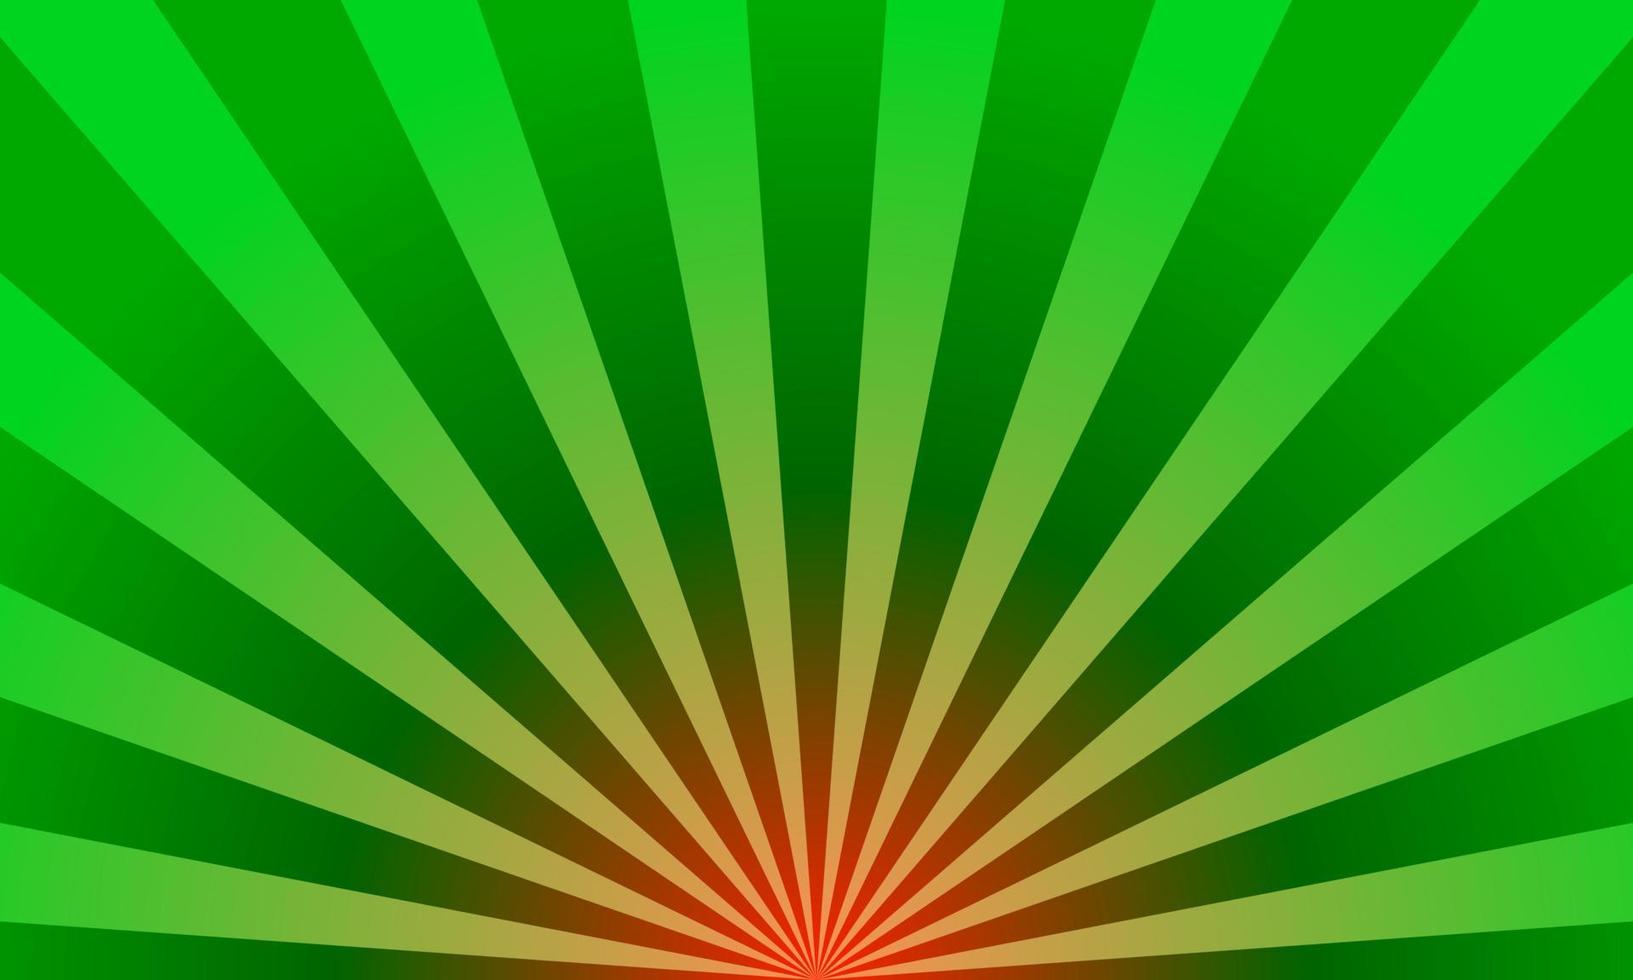 Grün Sunburst abstrakt Hintergrund. Japan, Hintergrund, Grün, Sonne, Licht, Sonnenaufgang, Muster, japanisch, Wirkung, Strahl, Vektor, Comic, Sunburst vektor